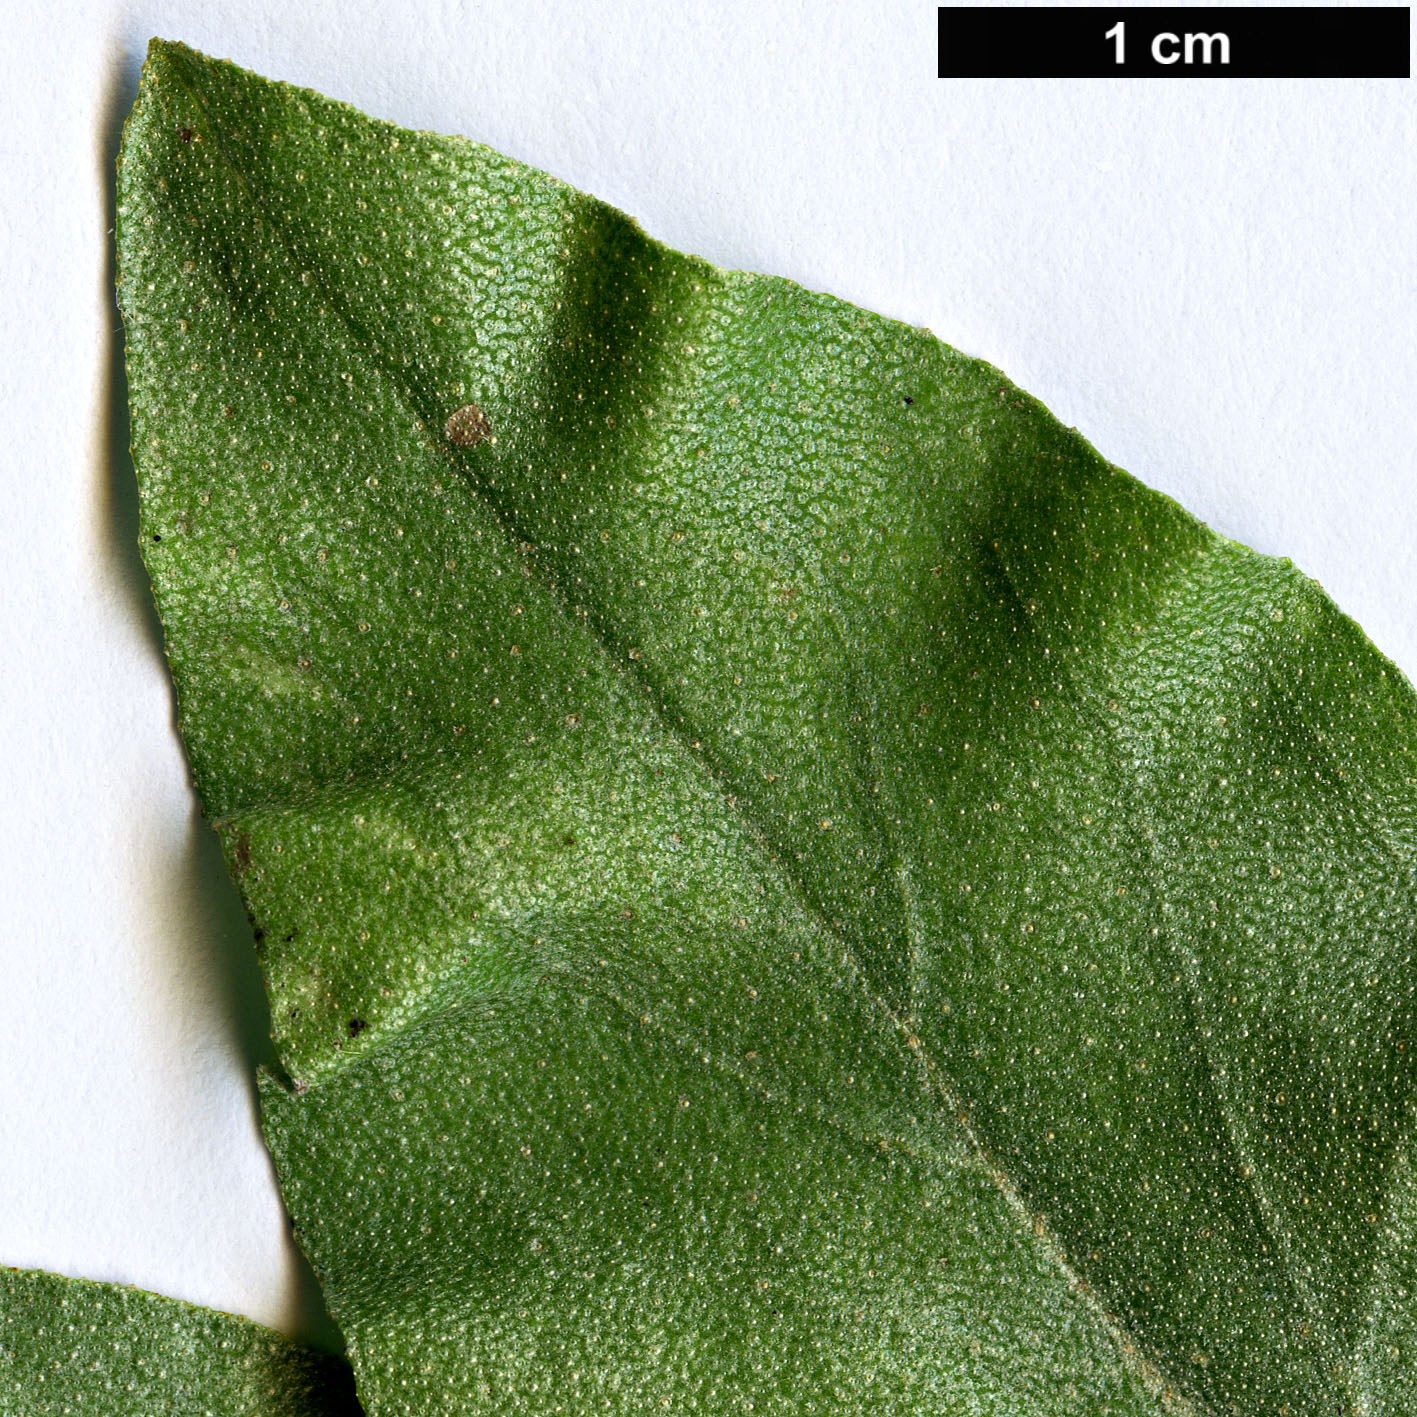 High resolution image: Family: Elaeagnaceae - Genus: Elaeagnus - Taxon: commutata